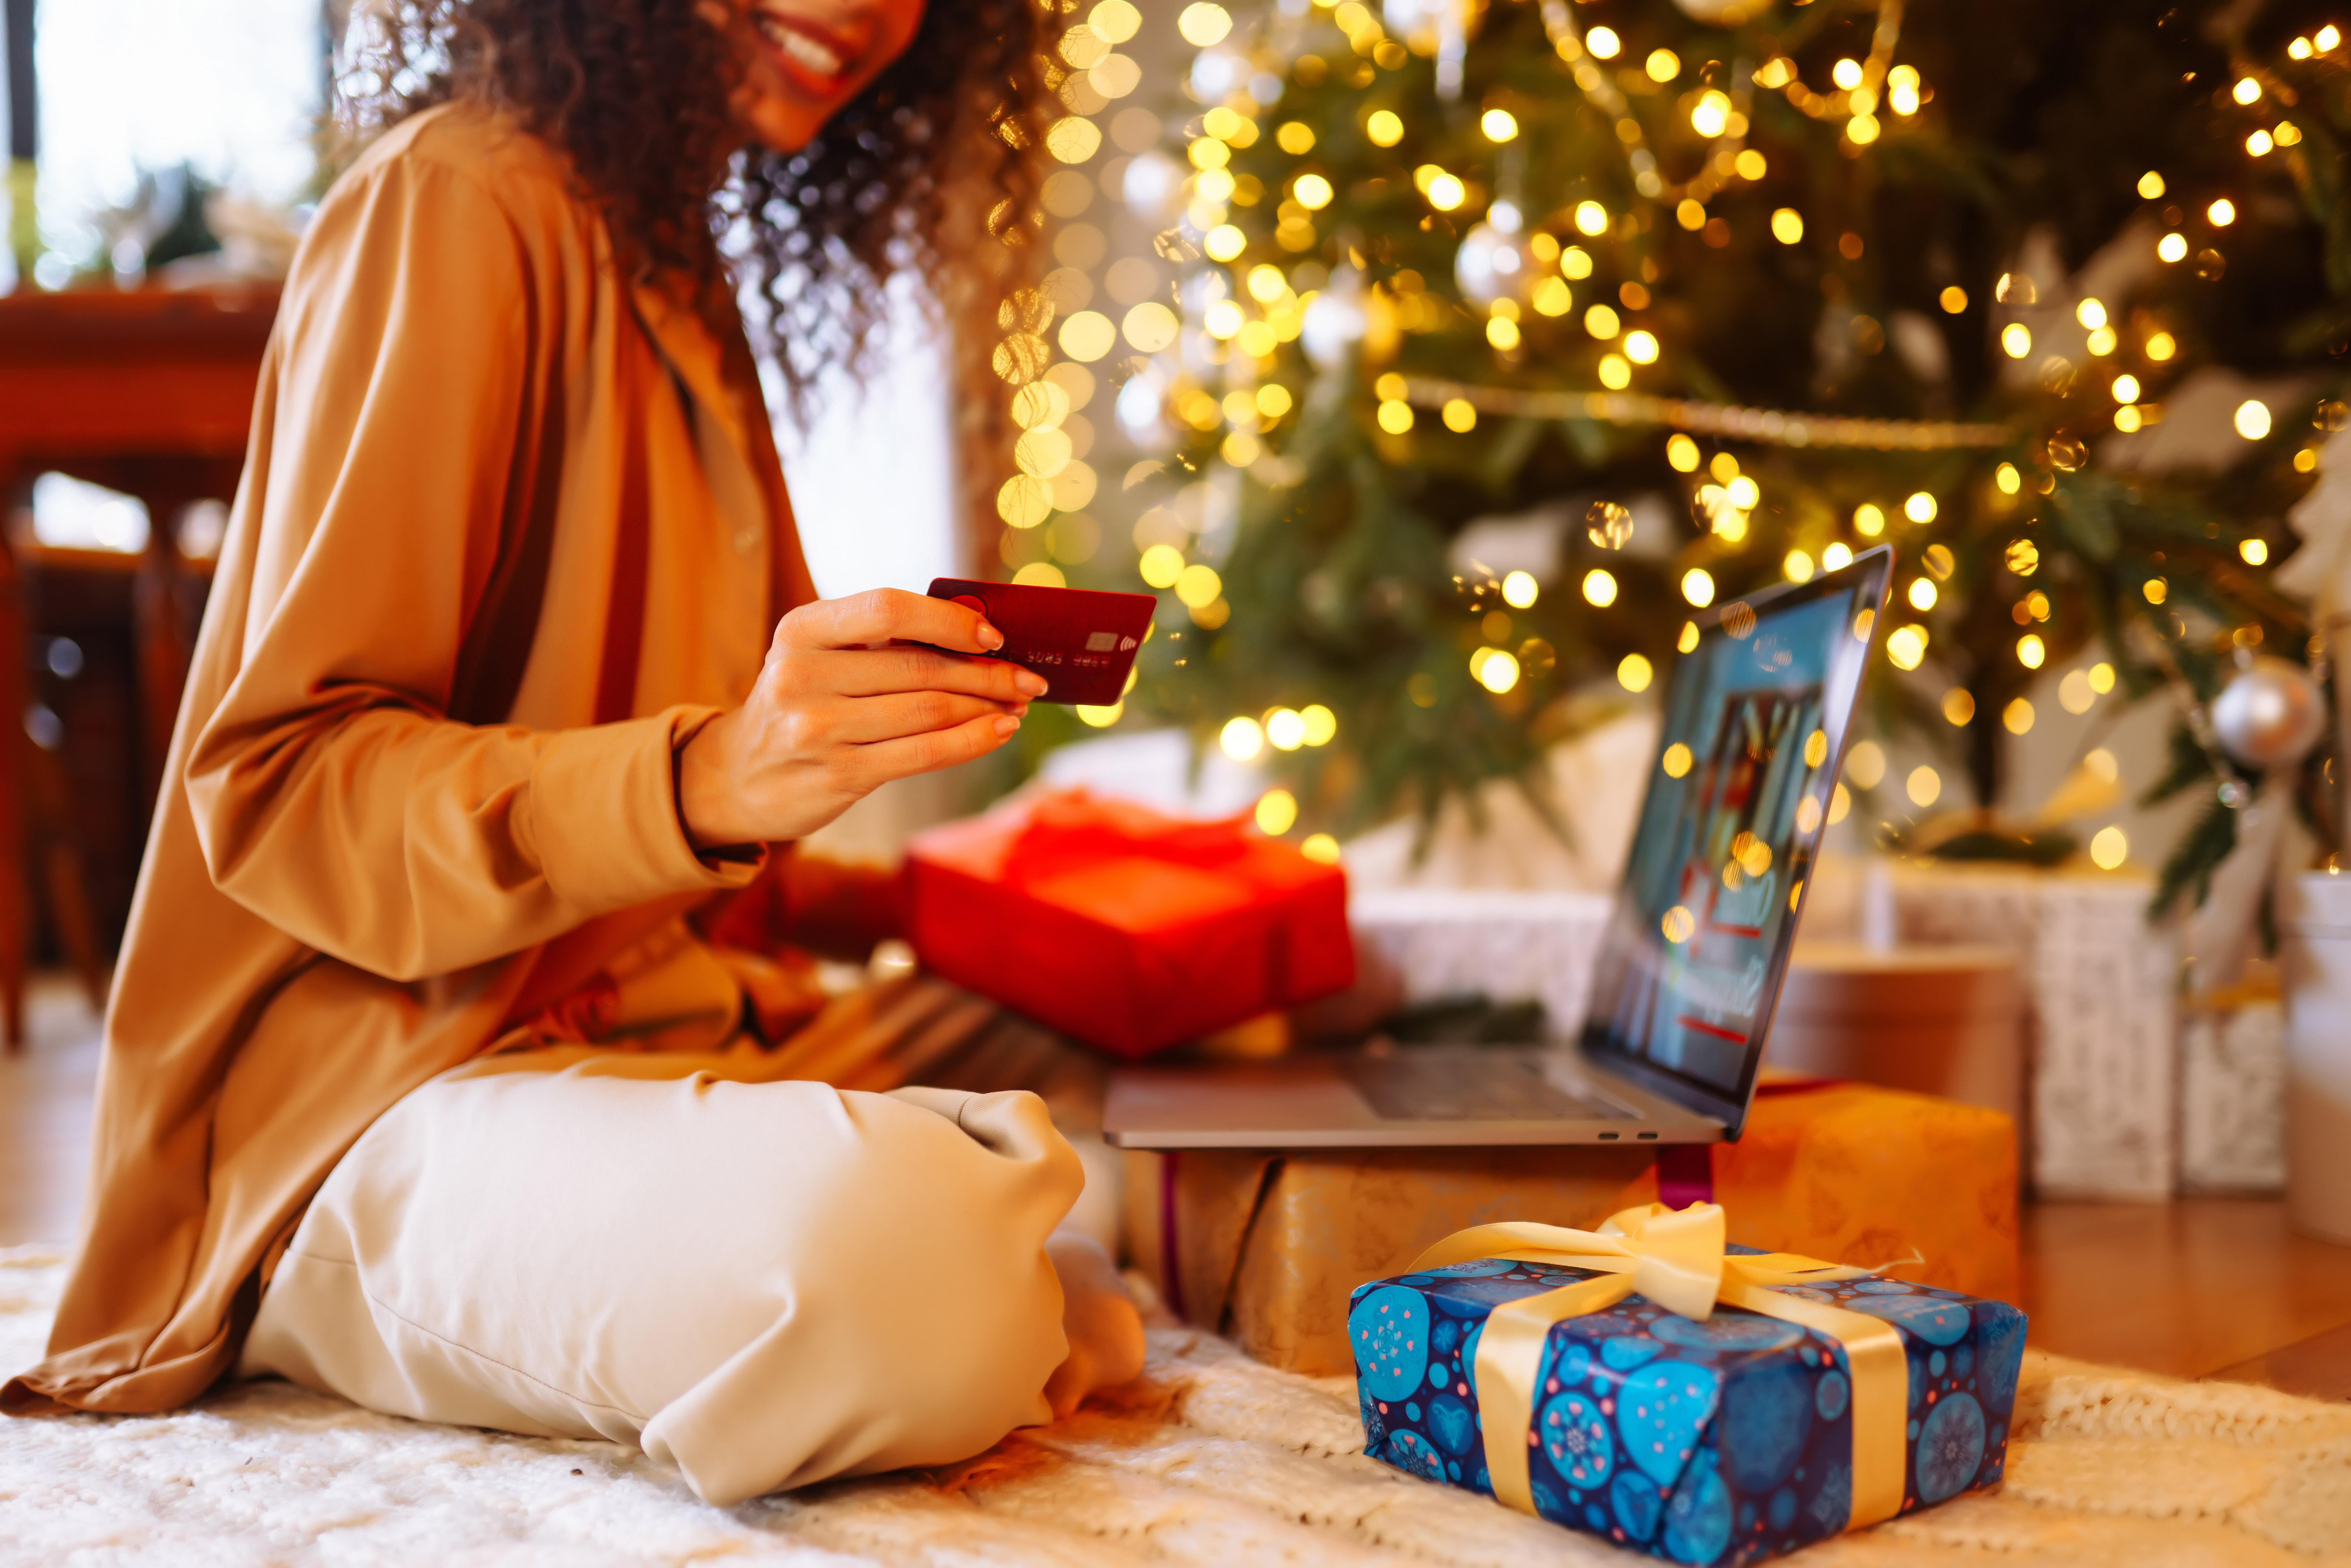 Endividado, consumidor tende a abandonar compra por impulso no Natal